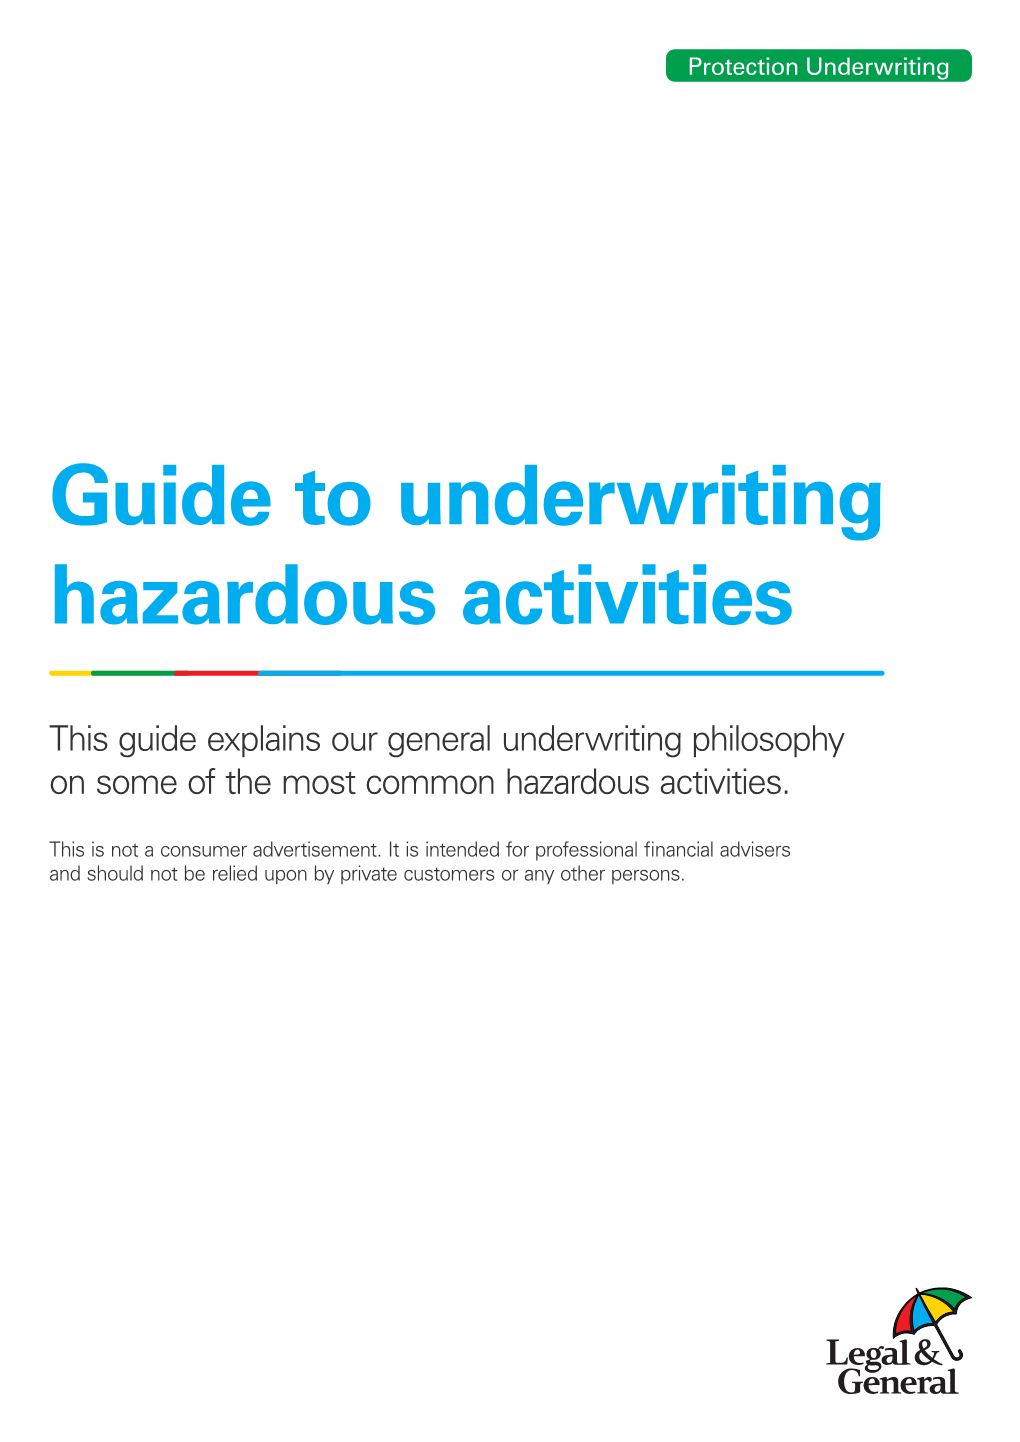 Guide to Underwriting Hazardous Activities